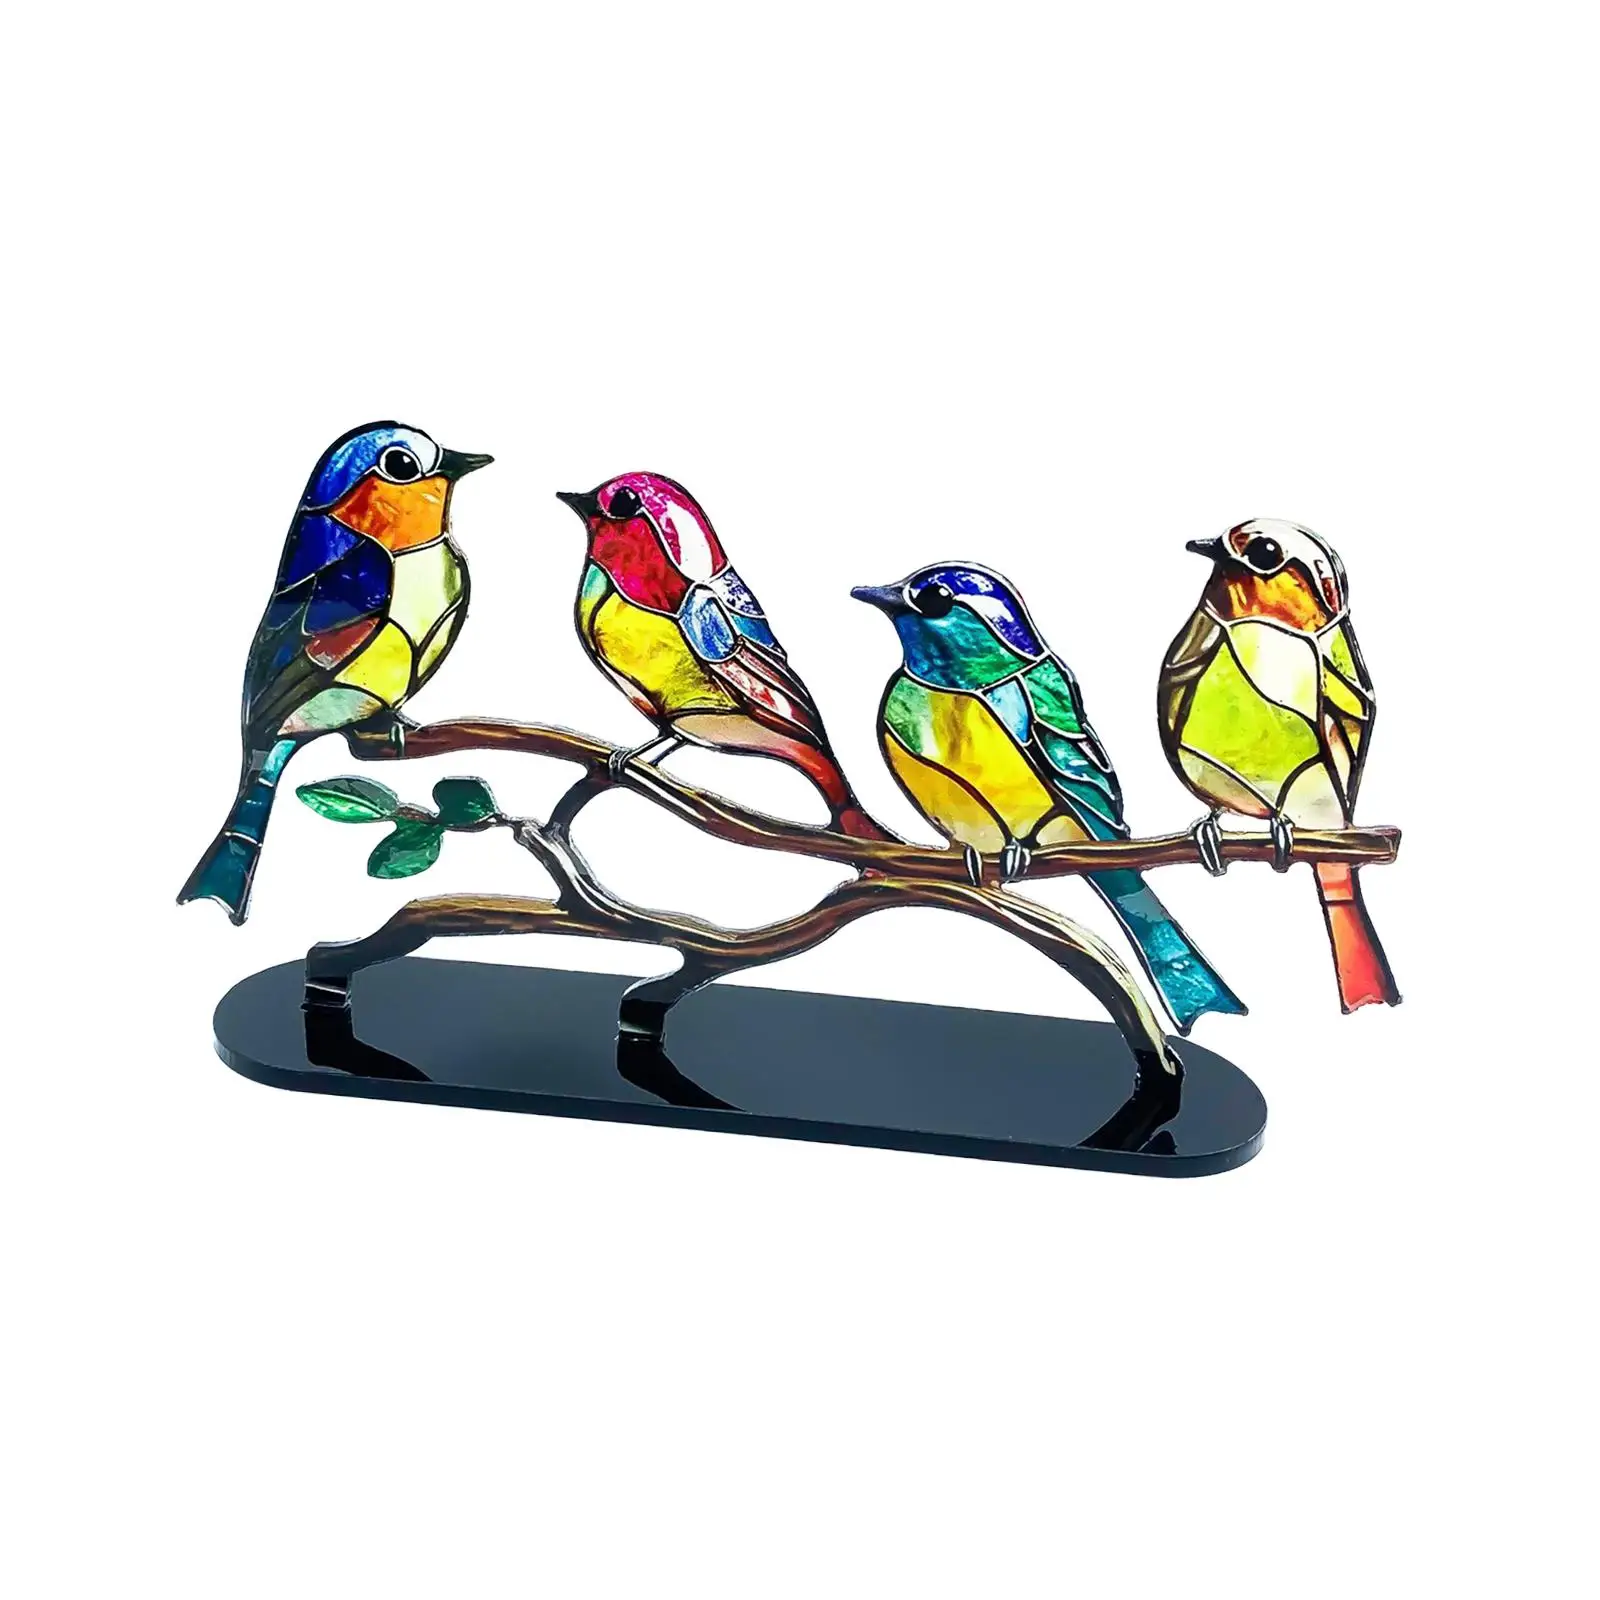 Birds Desktop Ornament Artwork Craft Figurines Centerpiece Bird Statues Bird Sculpture for Car Livingroom Party Tabletop Indoor